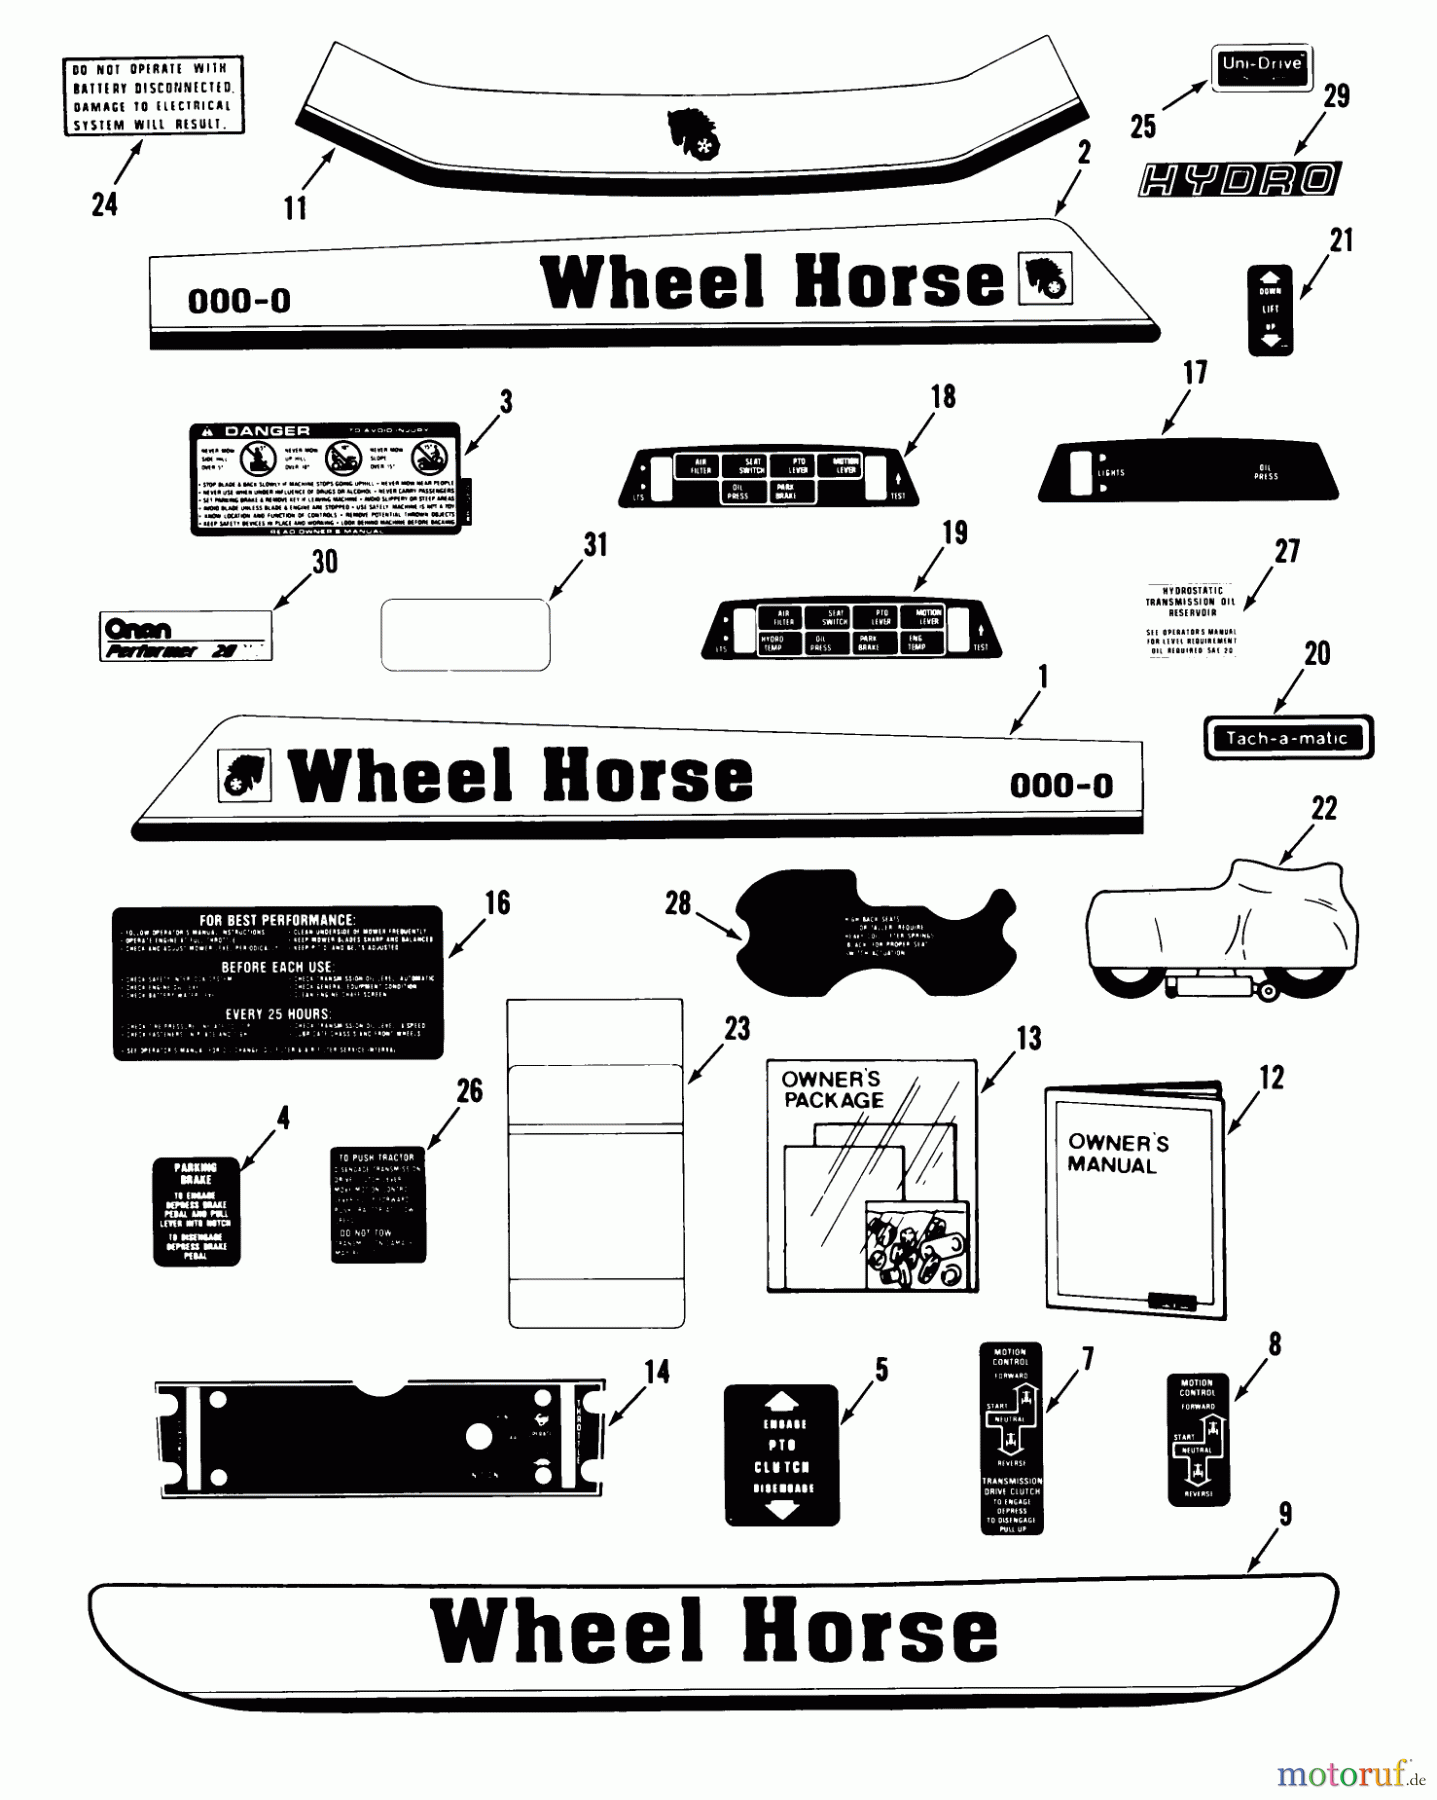  Toro Neu Mowers, Lawn & Garden Tractor Seite 1 31-18OE02 (518-H) - Toro 518-H Garden Tractor, 1989 DECALS